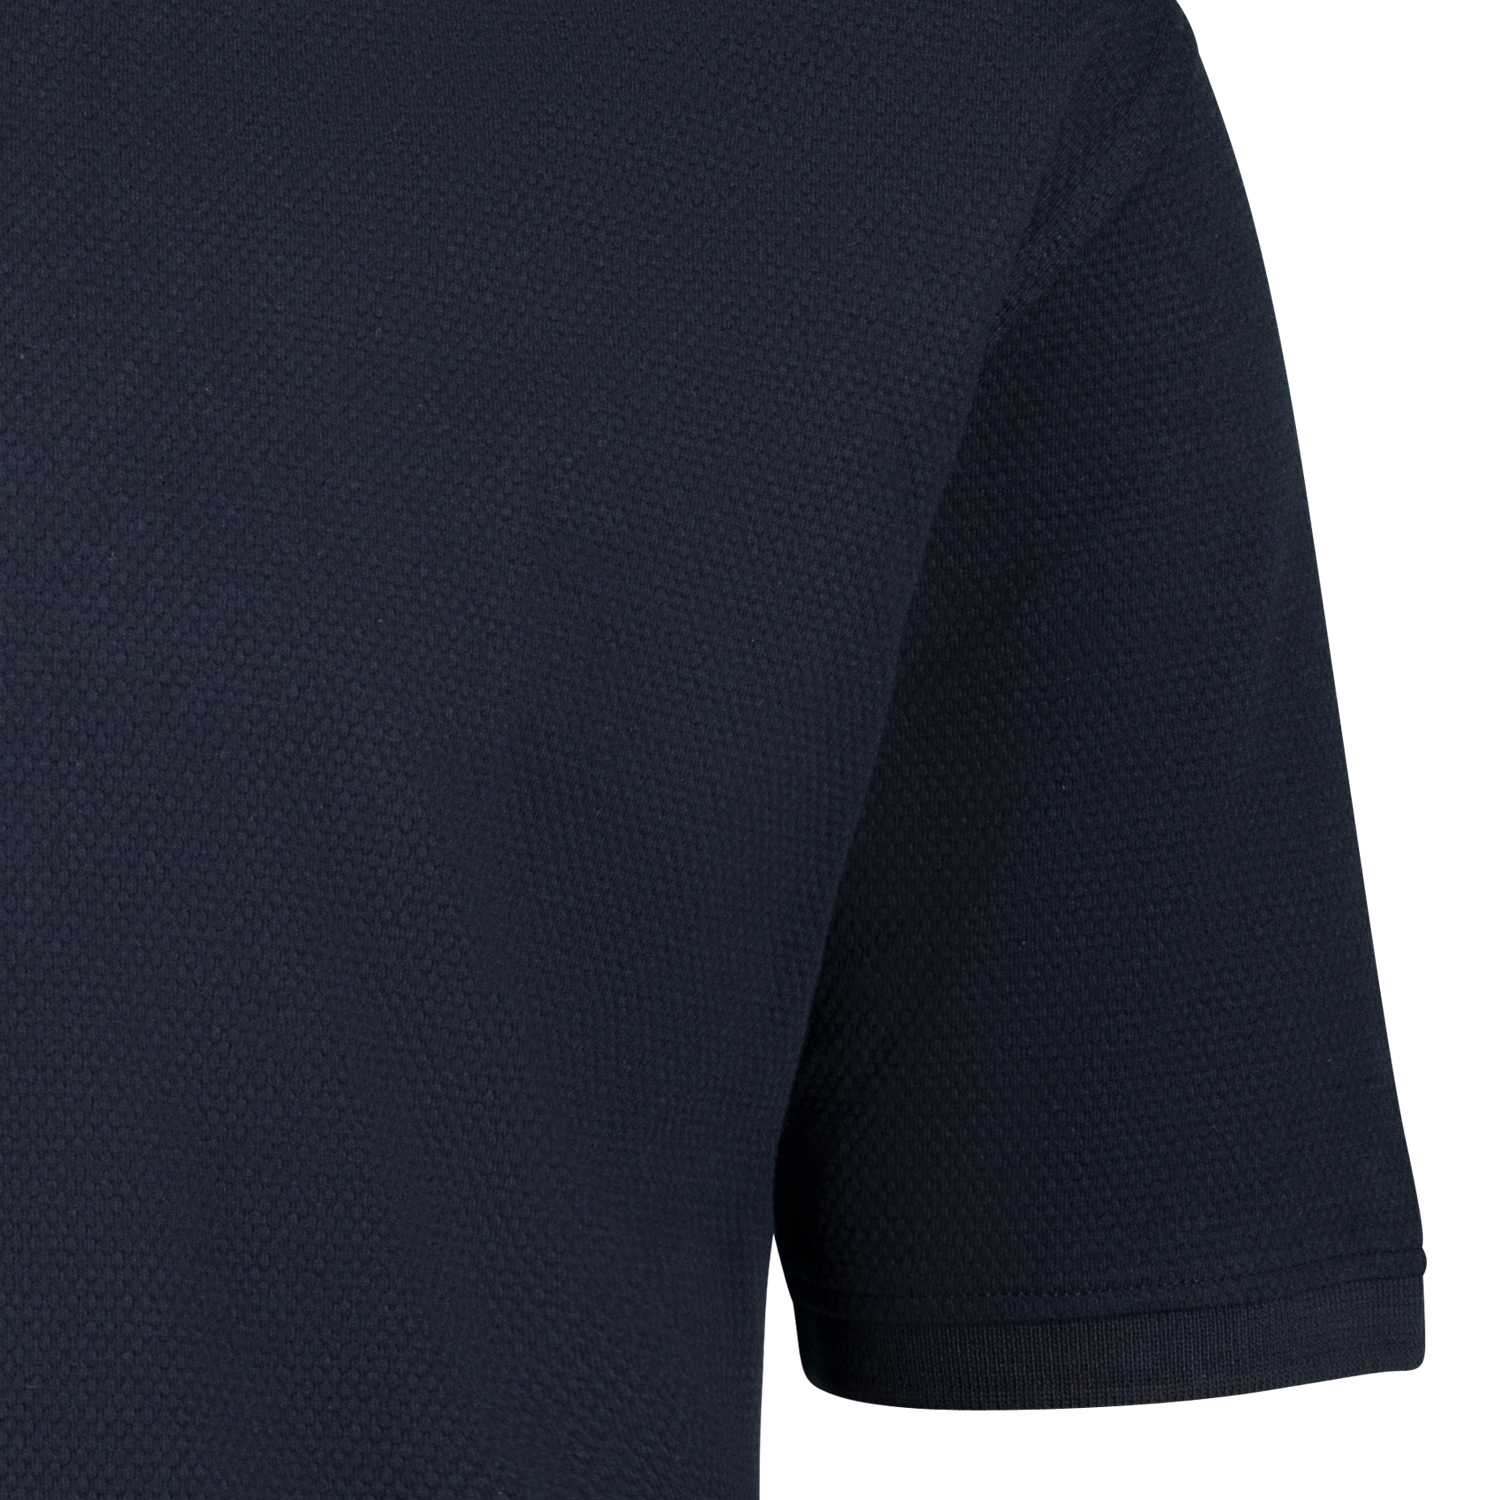 Kurzarm Poloshirt aus Waffelpiqué für Herren in navy REGULAR FIT von ADAMO Serie "Stephan" in Übergrößen bis 10XL